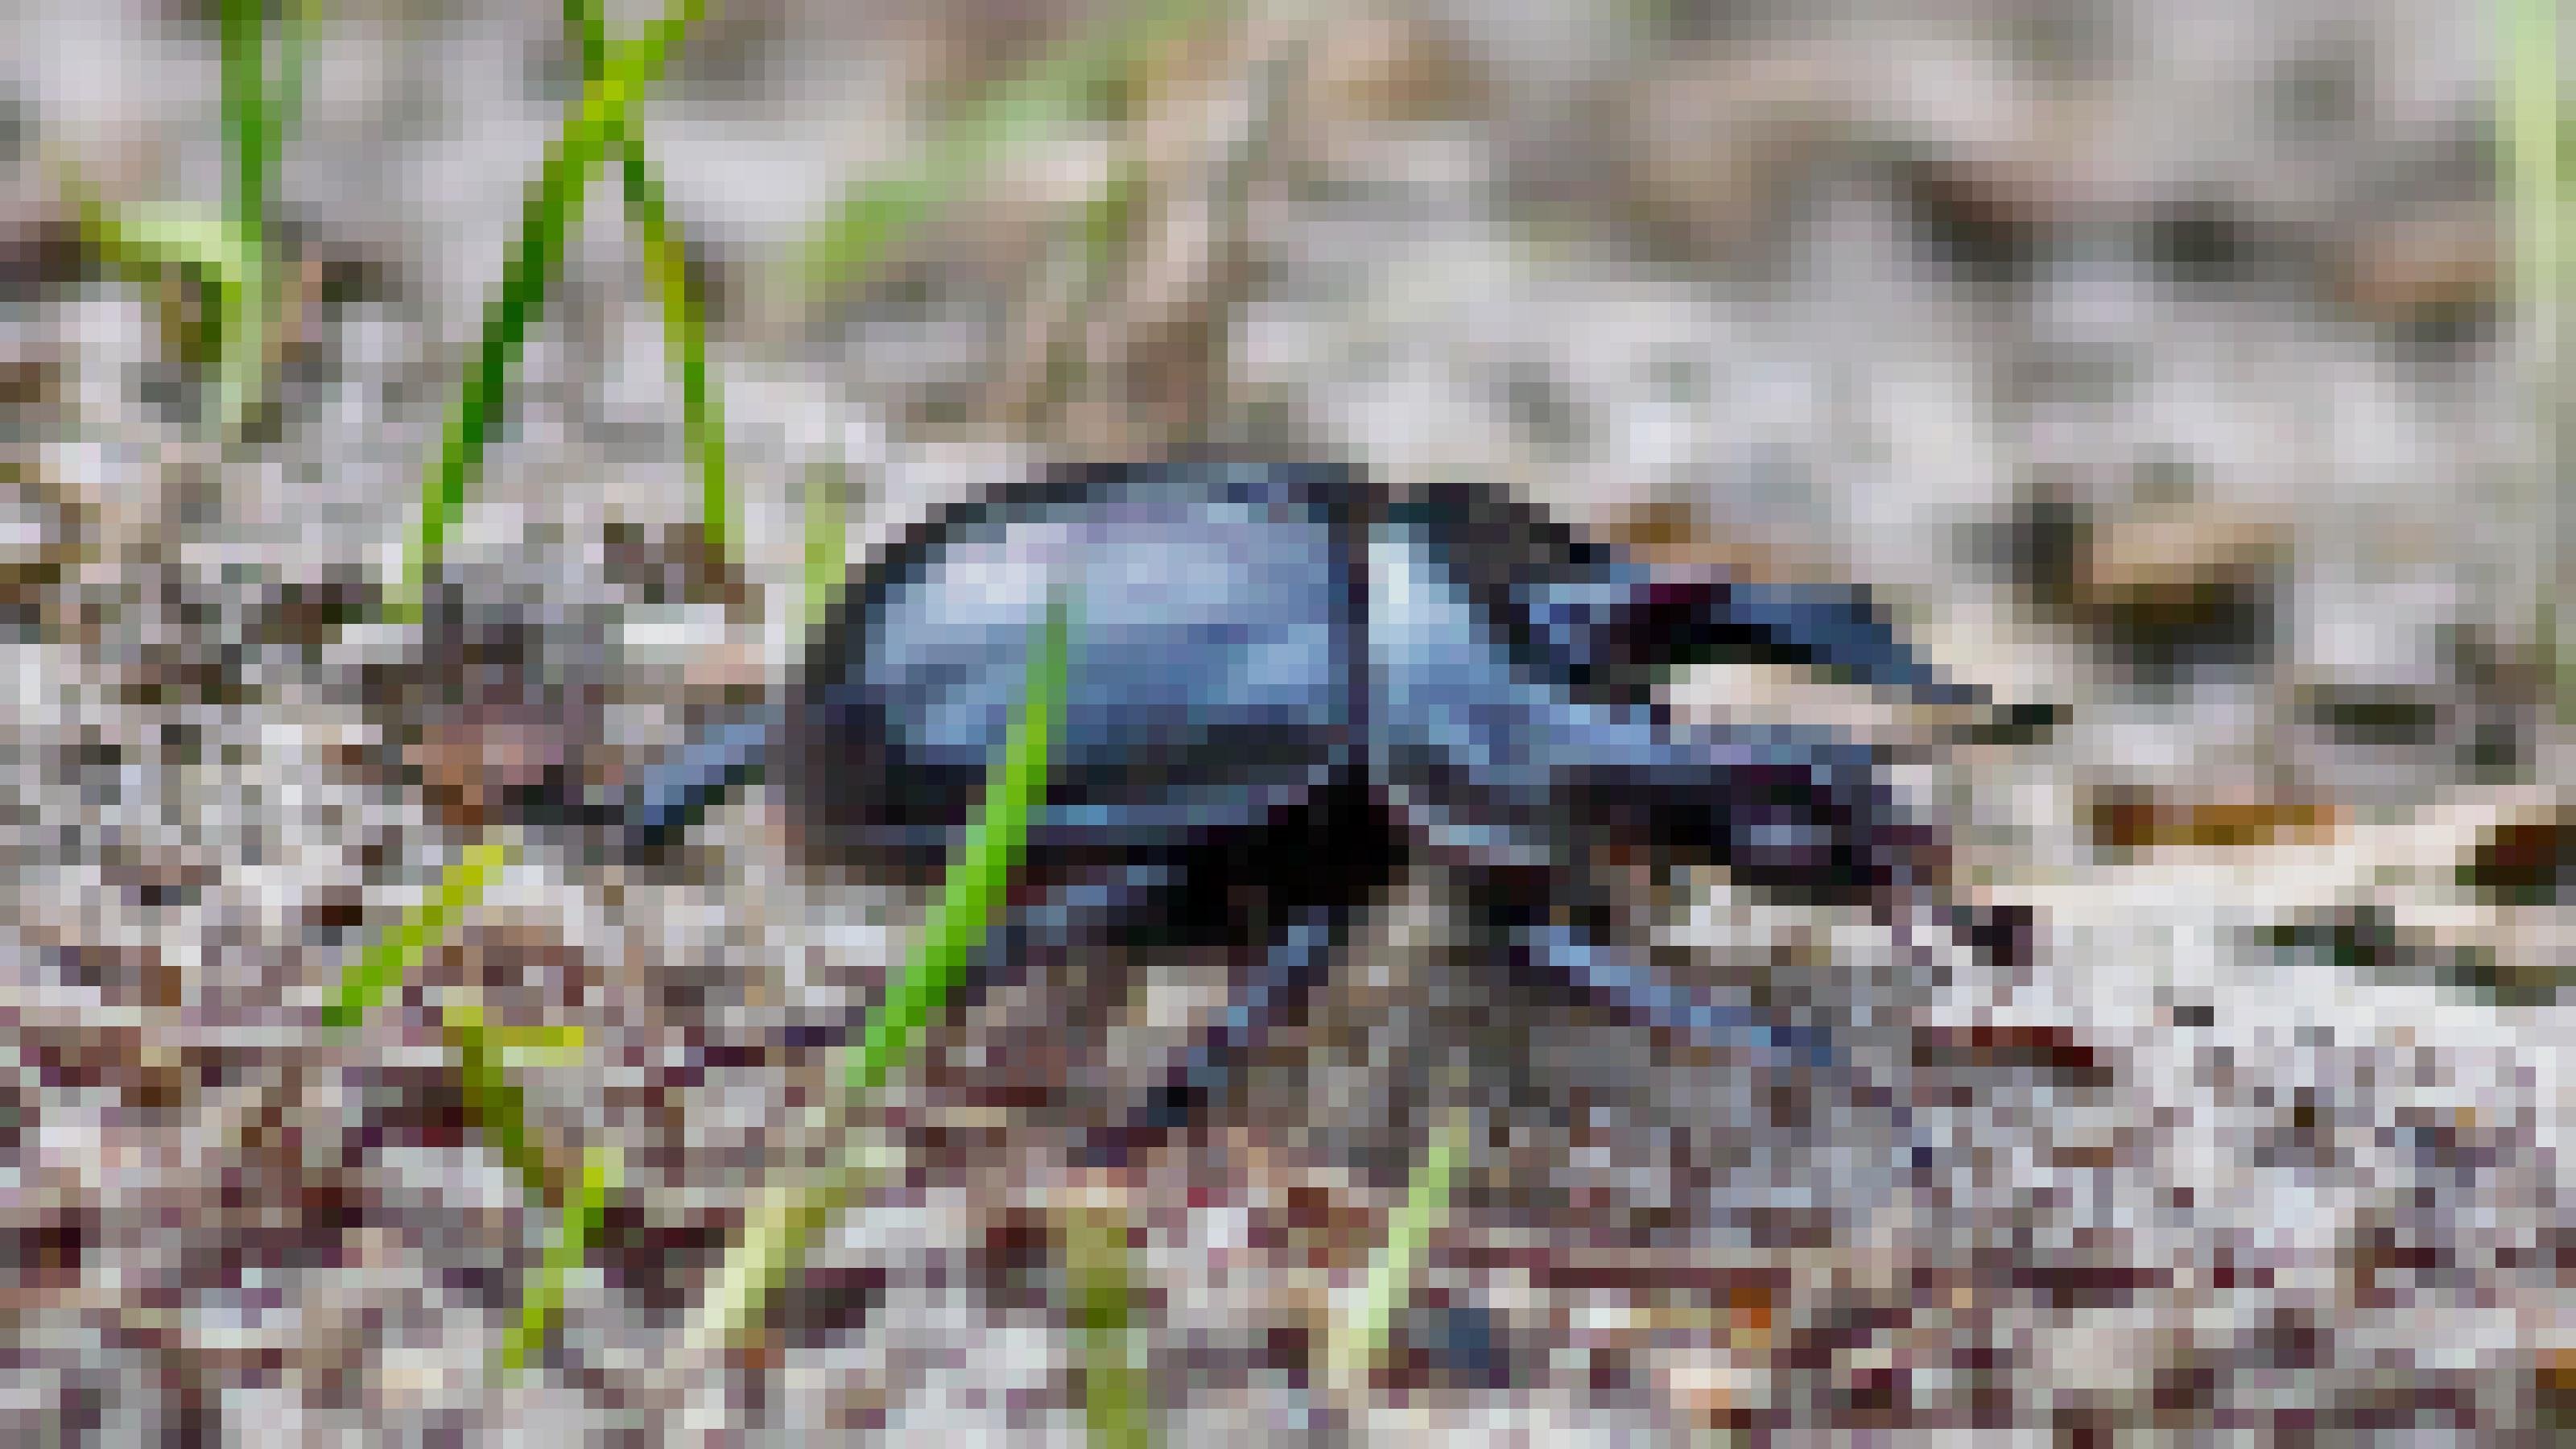 Ein schwarzer Käfer krabbelt über Sand, hier und da sprießen grüne Halme